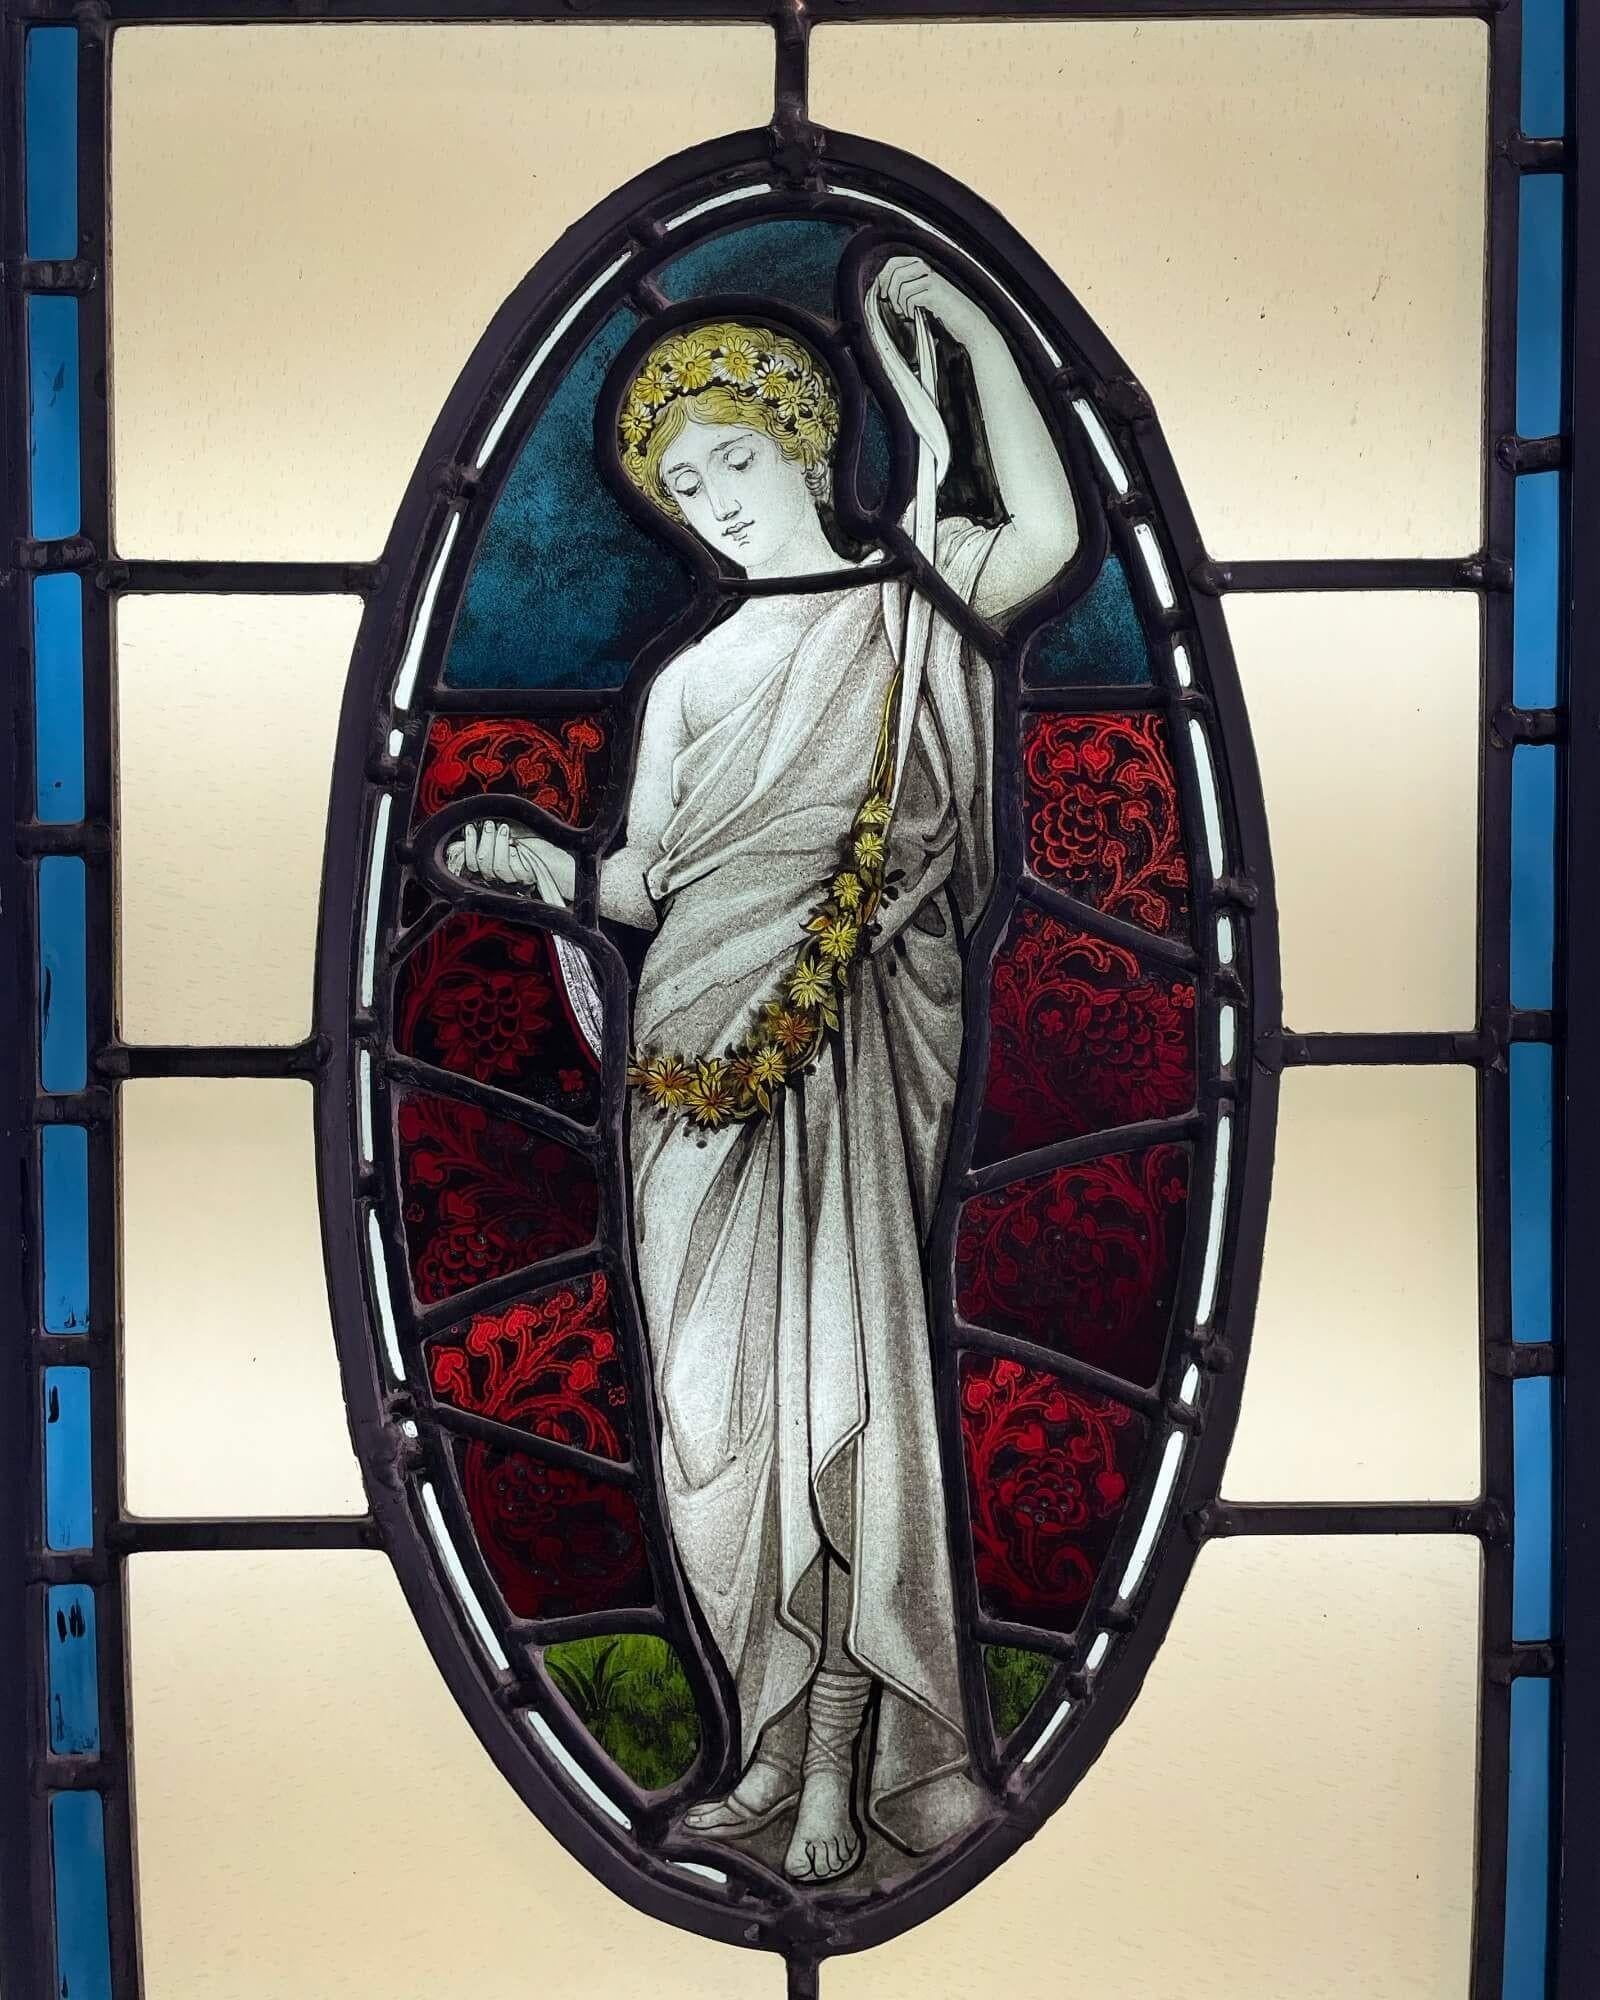 Un élégant grand vitrail de style néoclassique vers 1890. D'inspiration victorienne, ce vitrail s'articule autour d'un panneau ovale allongé représentant une femme vêtue d'une draperie blanche, avec des fleurs dans les cheveux, tenant une guirlande